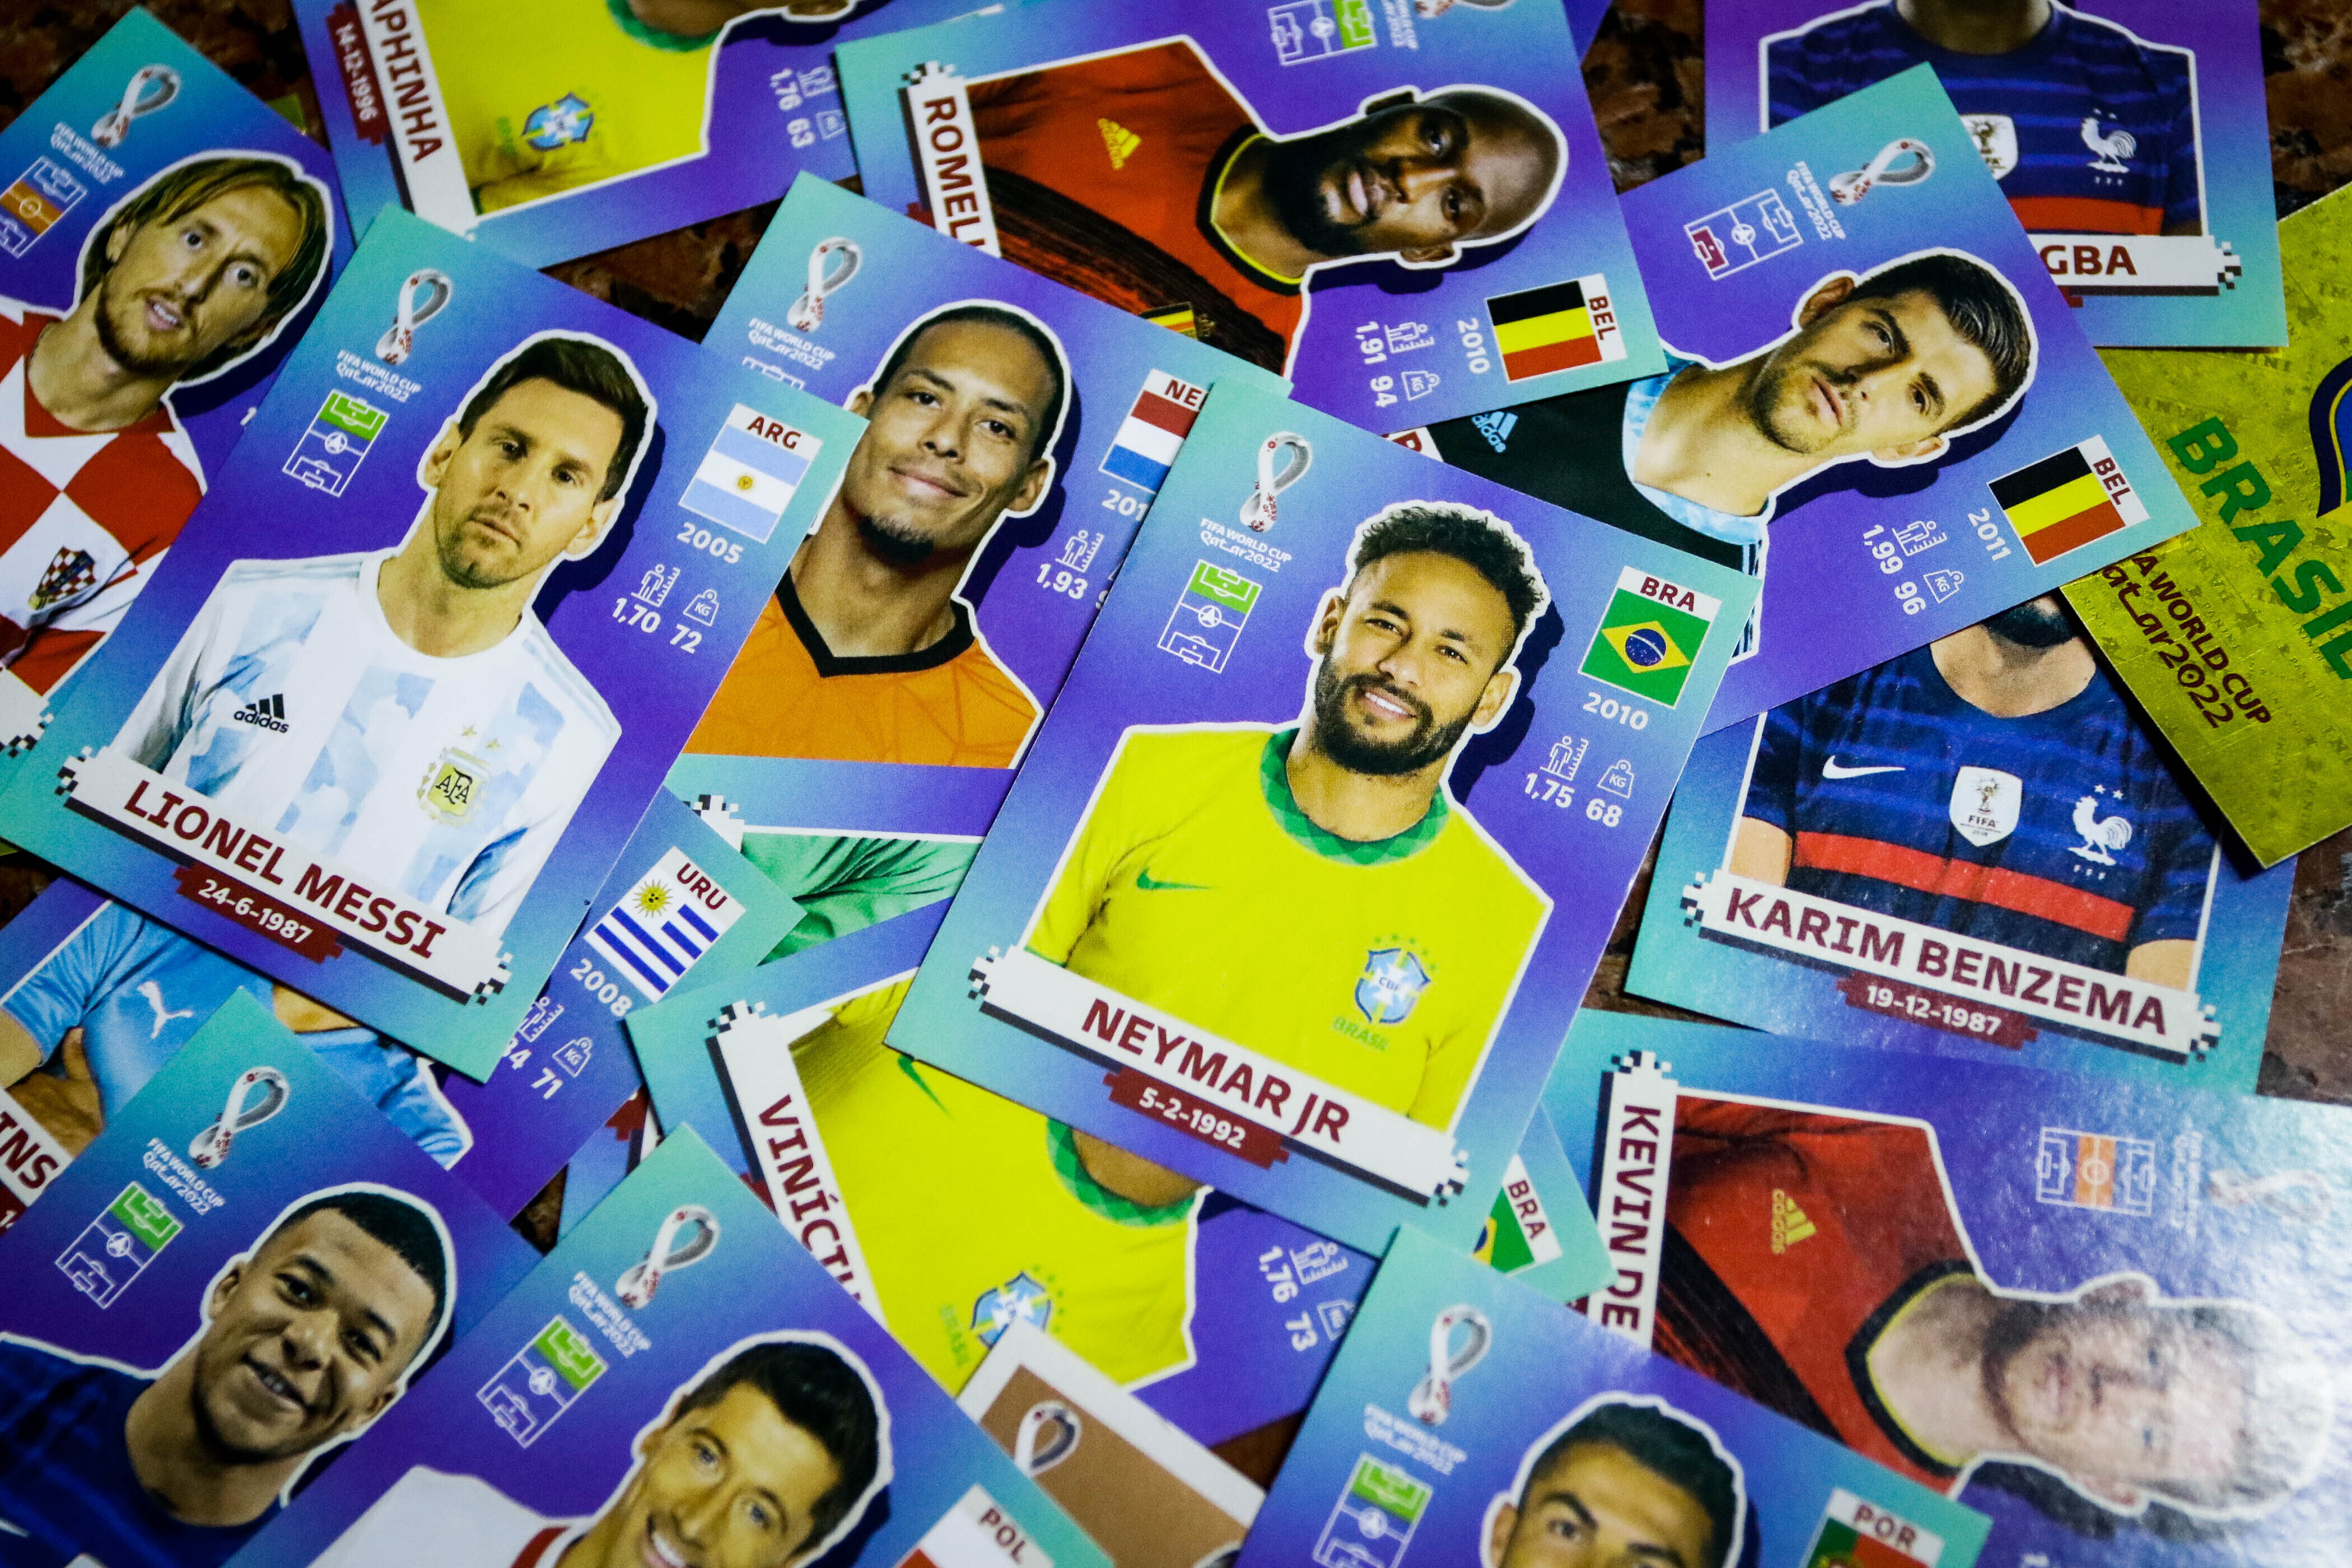 Figurinha especial de Neymar no álbum da Copa do Mundo é vendida